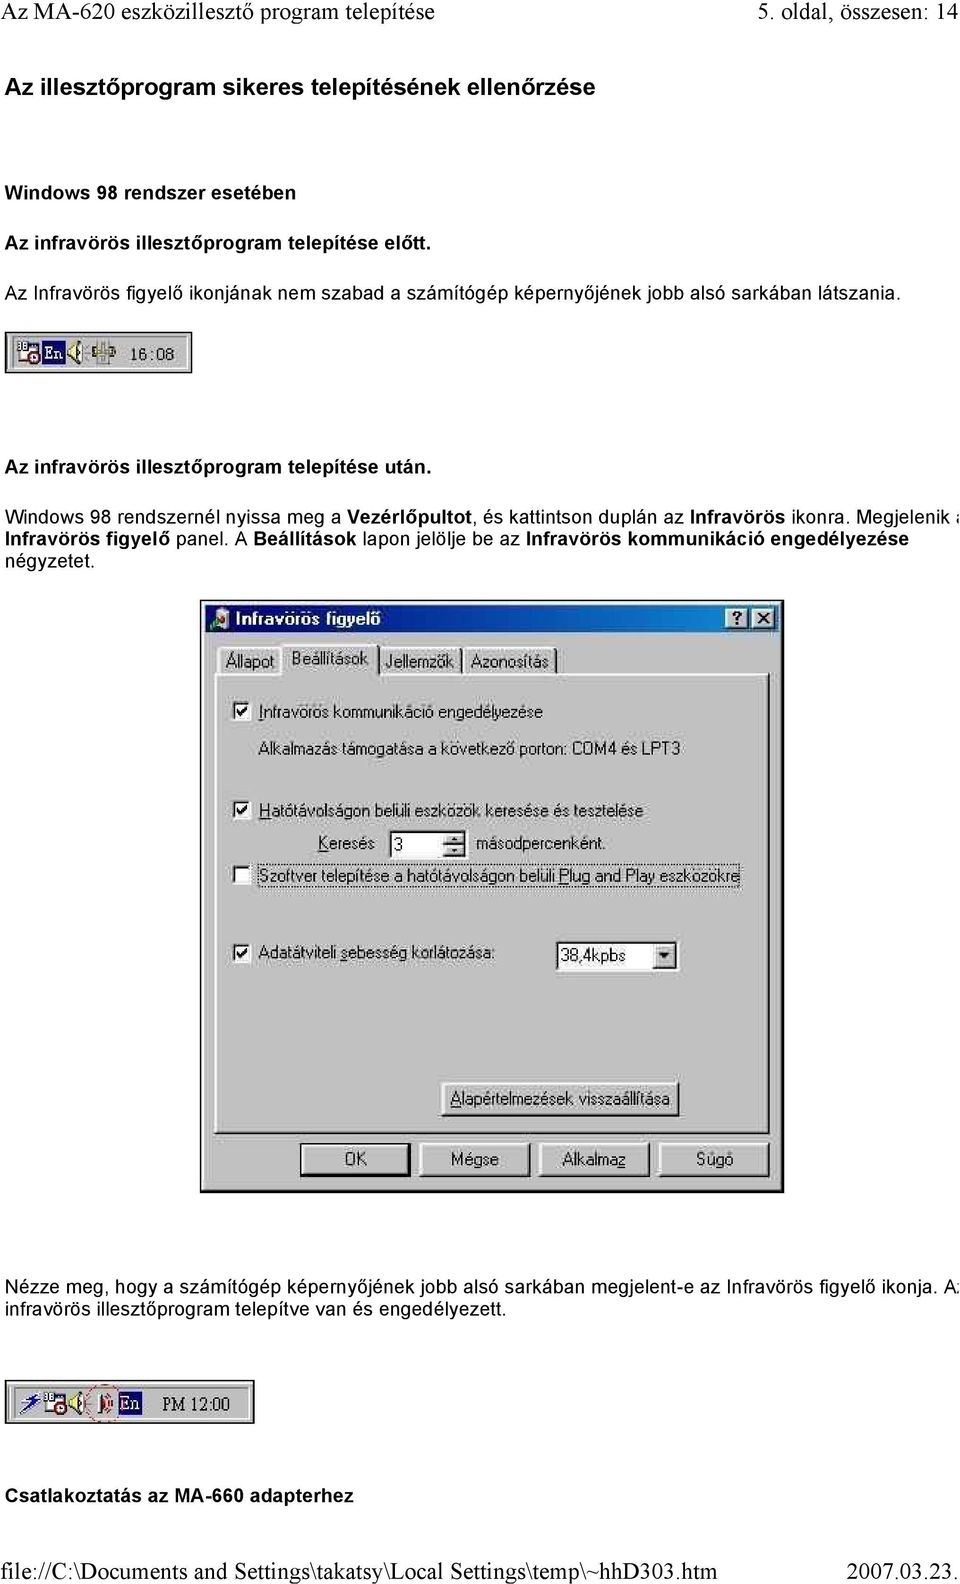 Windows 98 rendszernél nyissa meg a Vezérlőpultot, és kattintson duplán az Infravörös ikonra. Megjelenik az Infravörös figyelő panel.